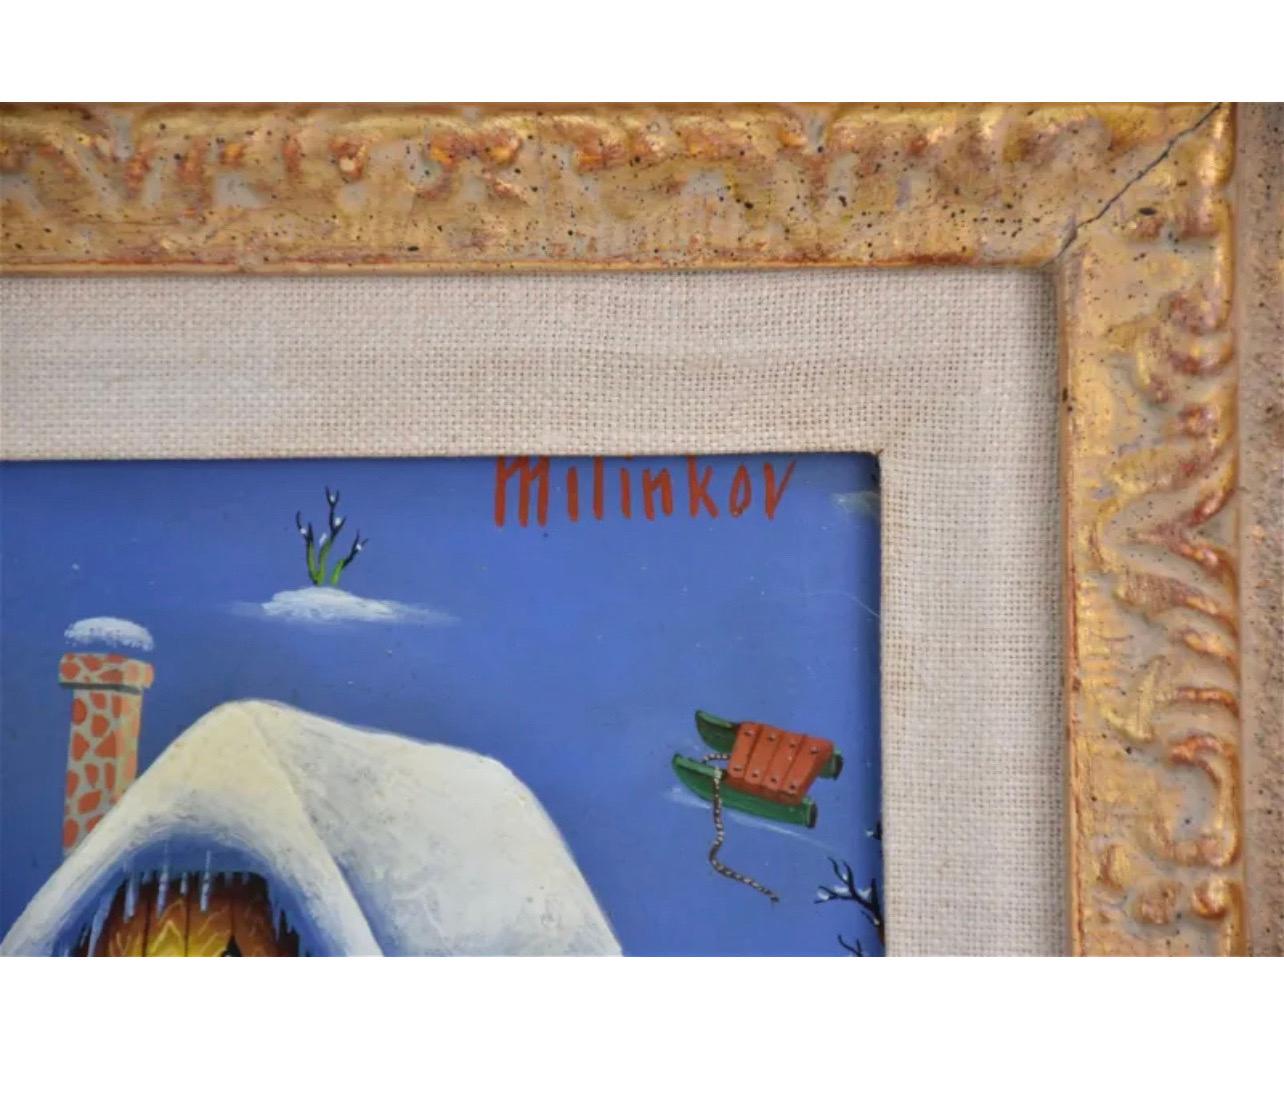 Ljubomir Milinkov (1938) 
Peinture à l'huile sur carton, 
Paysage pastoral fantaisiste de la ferme 
Signé à la main en haut à droite, 
Dimensions : peinture 12-1/2 x 15-1/2 pouces. encadré 18.5 x 21.5 pouces

Ljubomir Milinkov dépeint un cadre